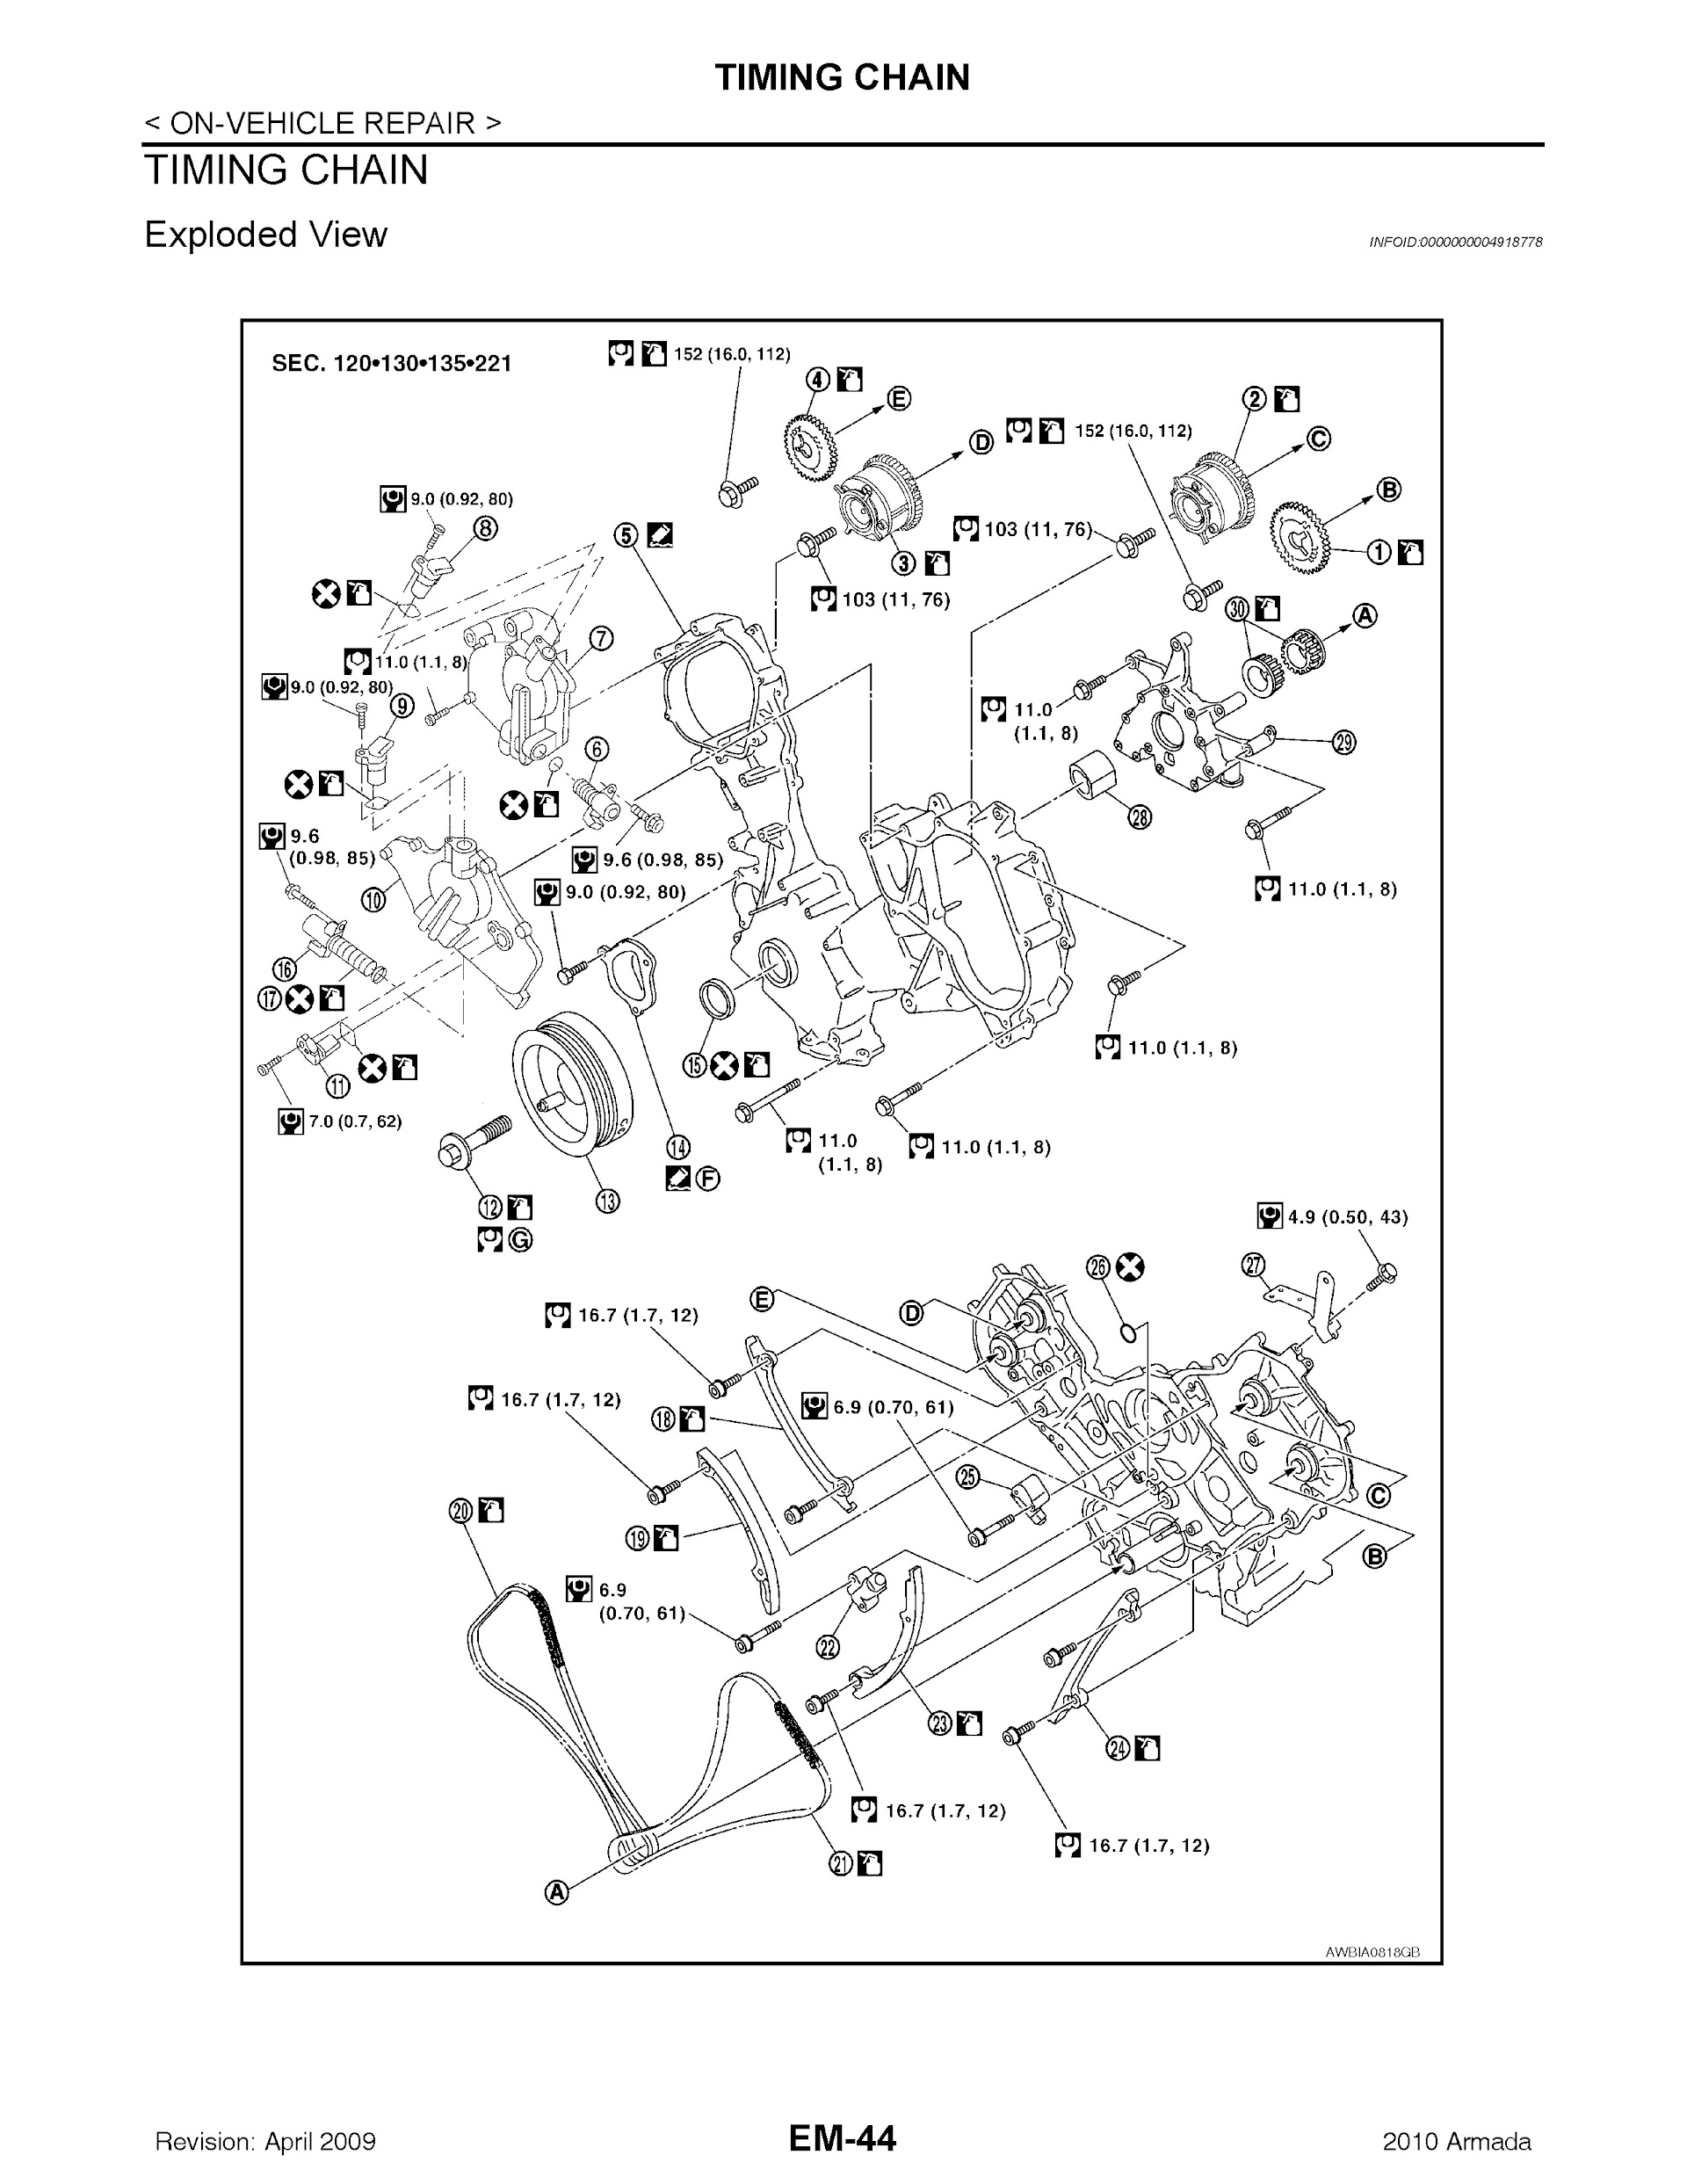 Download 2010 Nissan Armada Repair Manual.